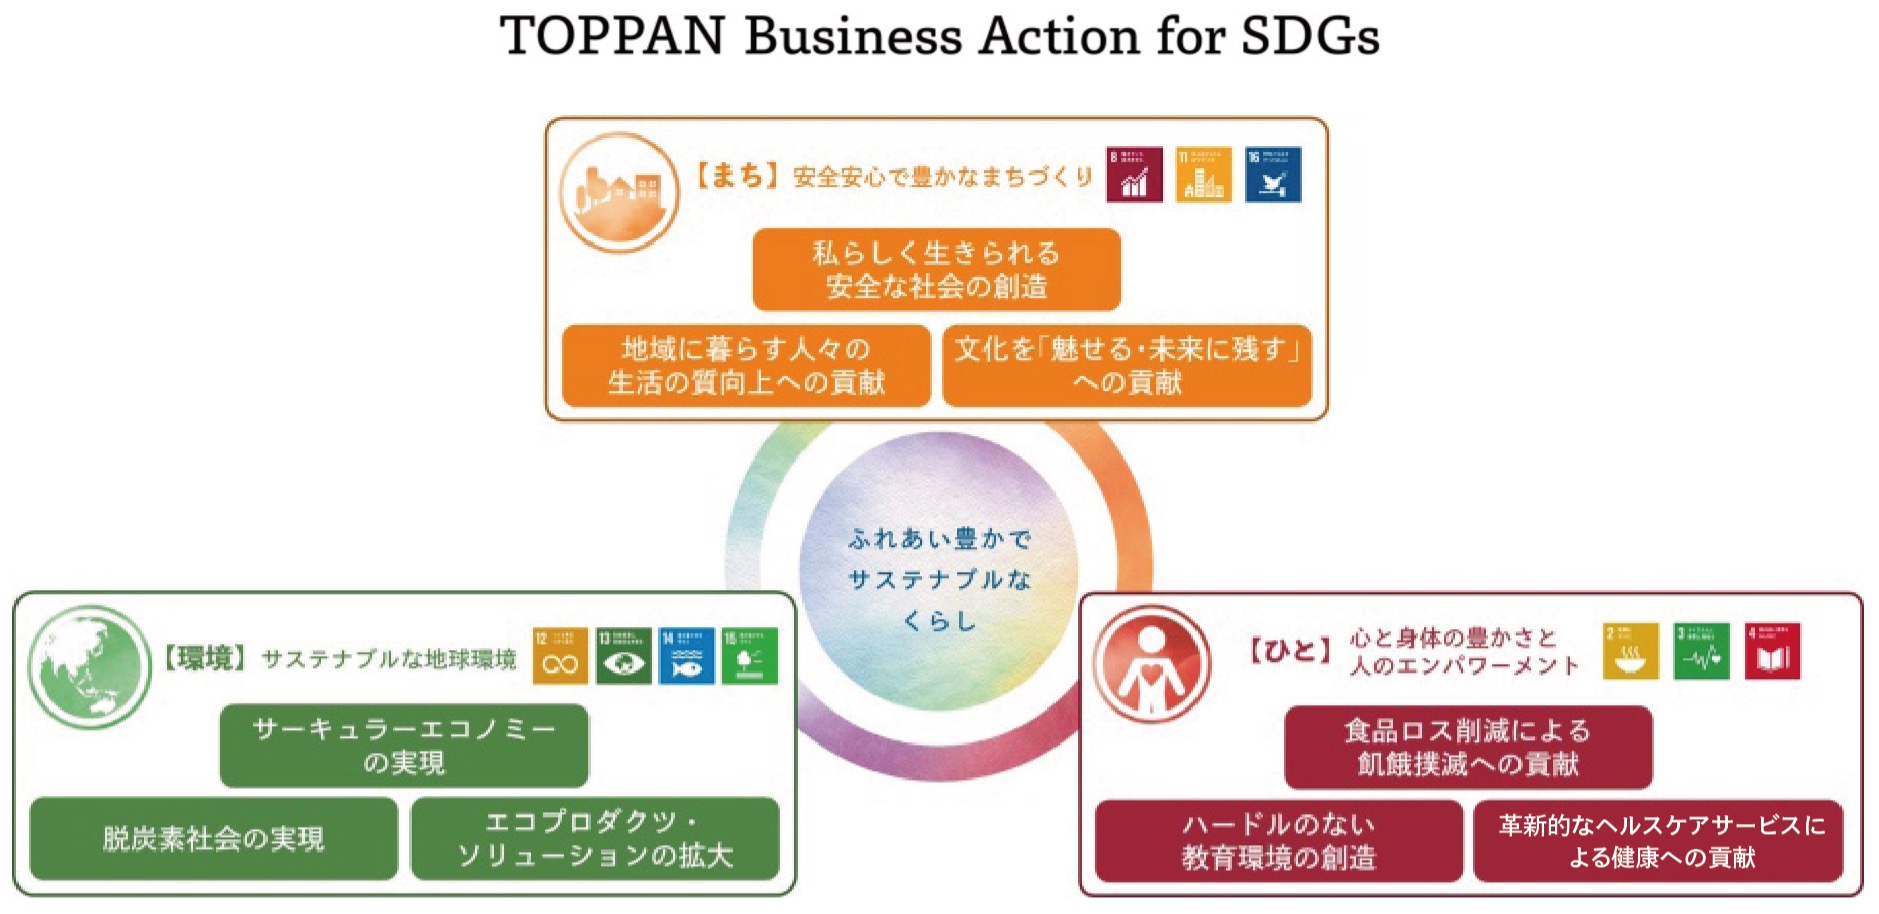 9つの注力分野「TOPPAN Business Action for SDGs」策定